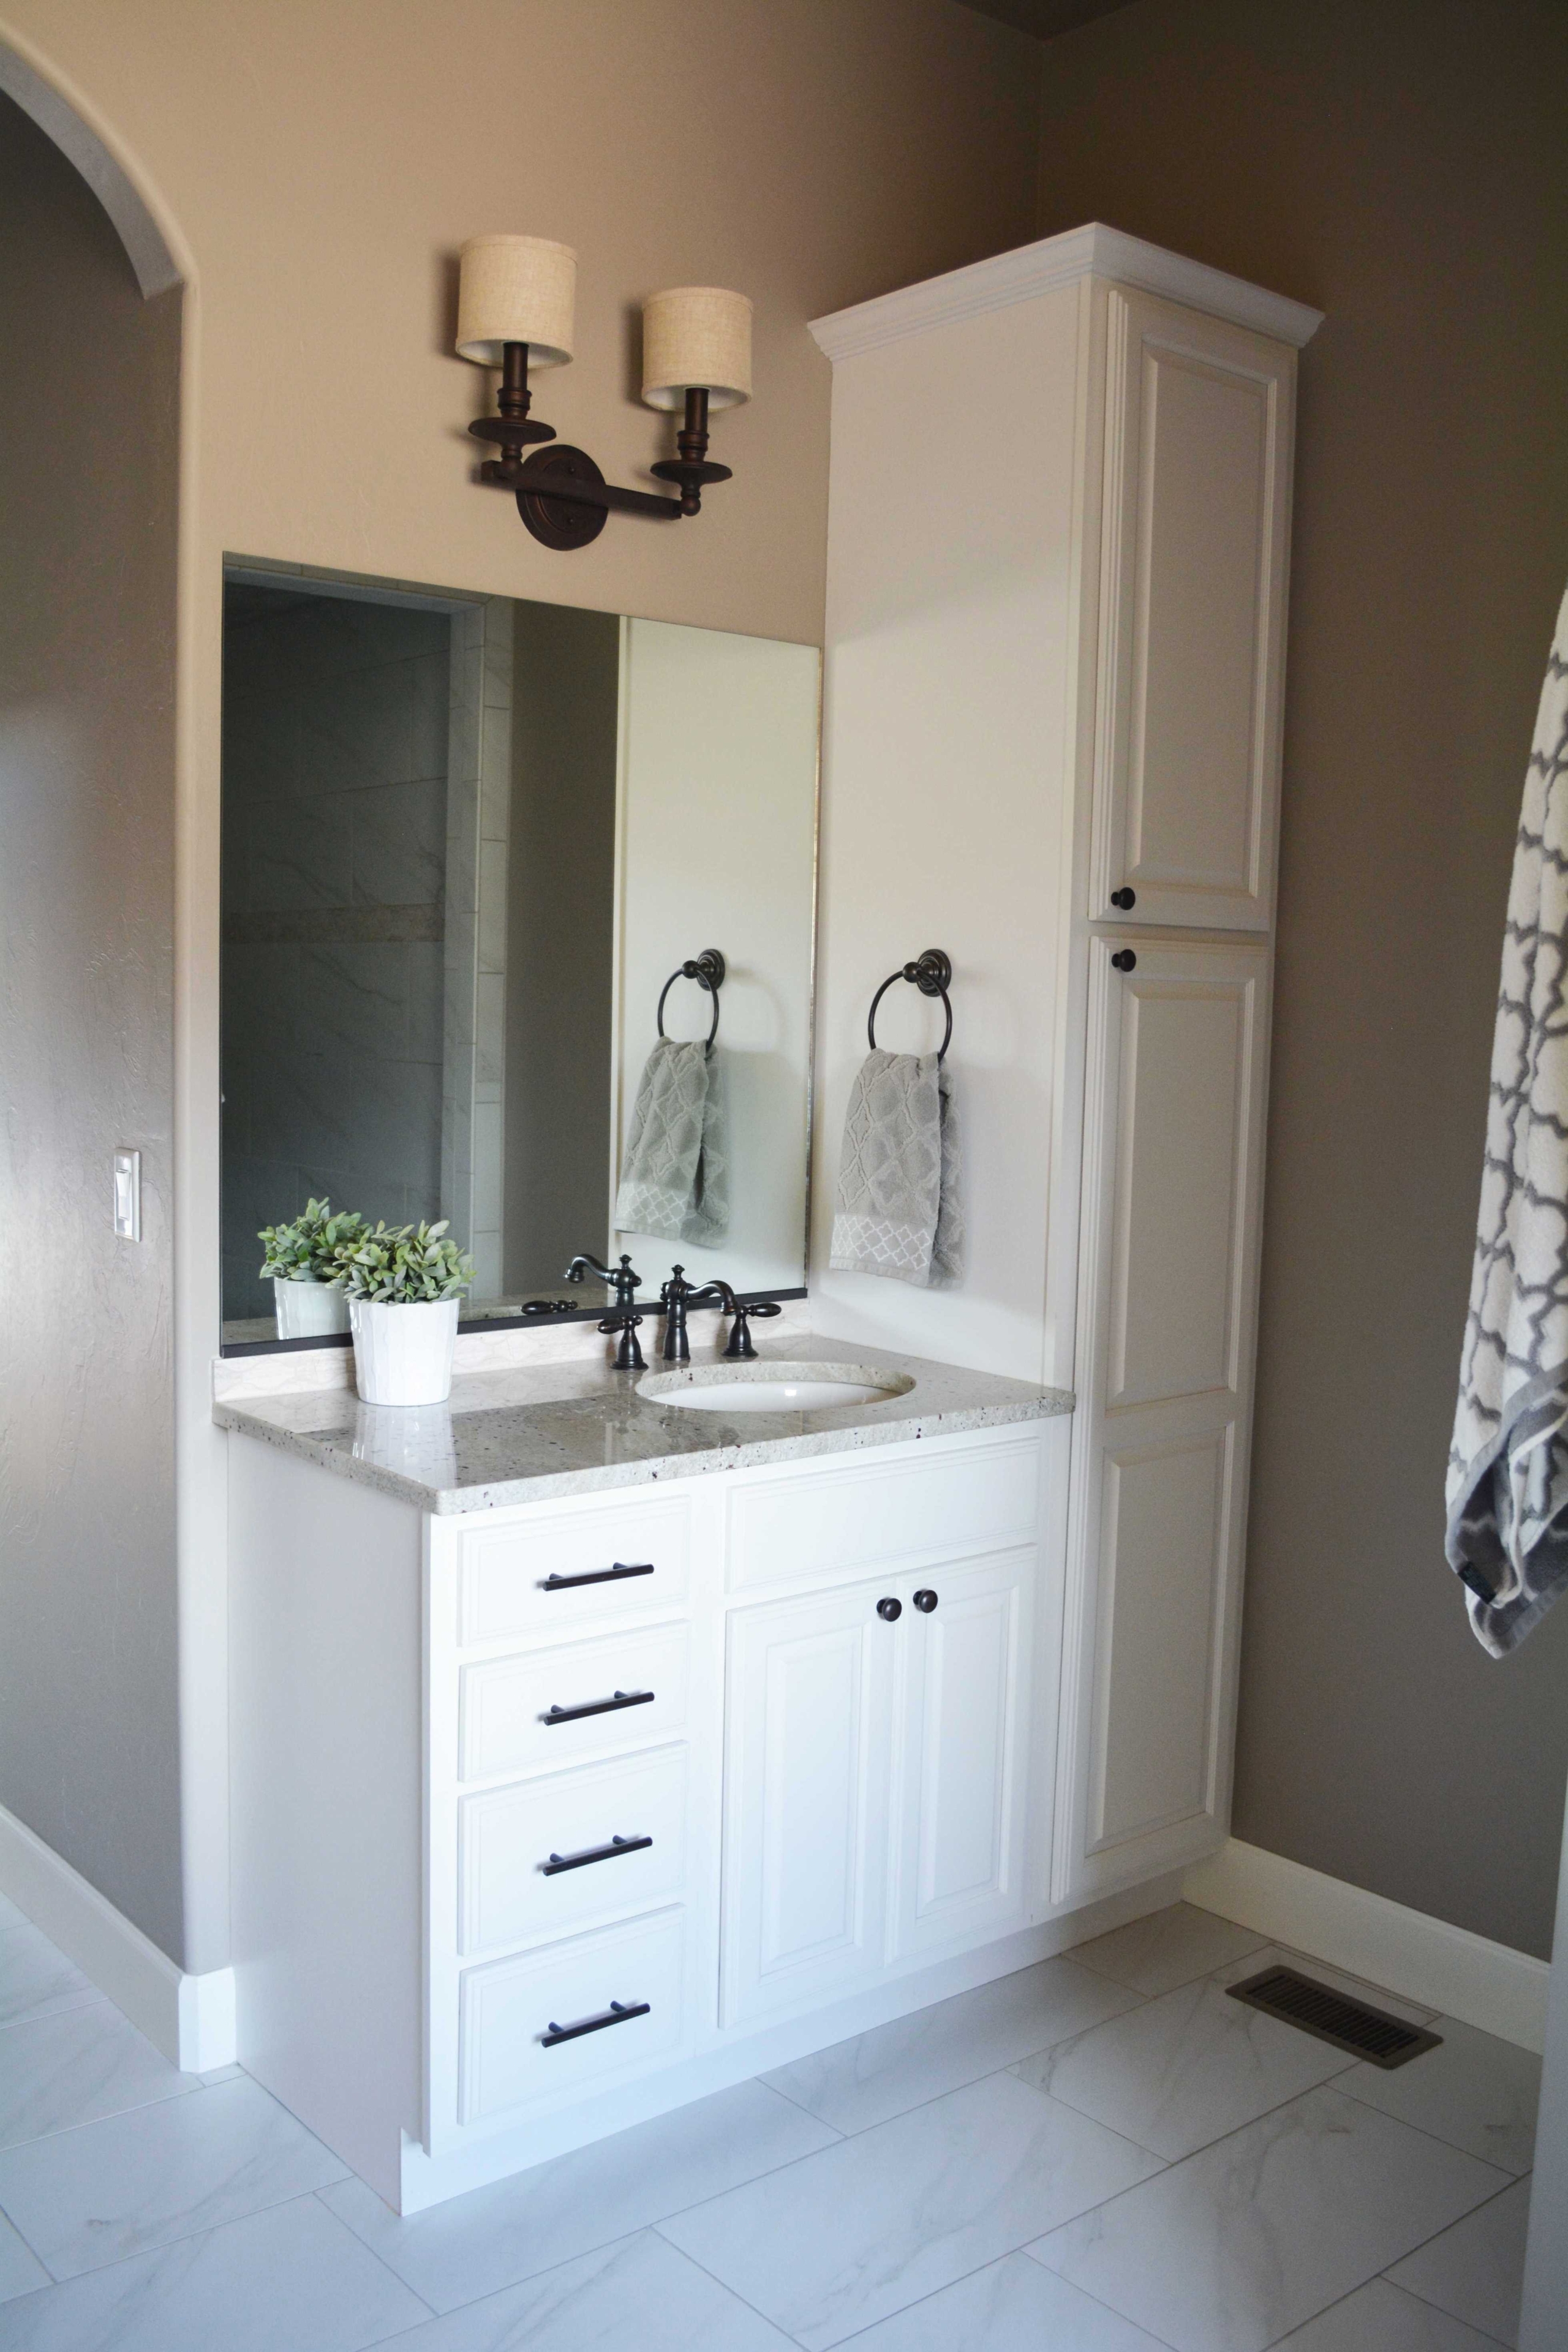 Bathroom Vanity And Linen Cabinet Combo, Double Vanity With Linen Tower